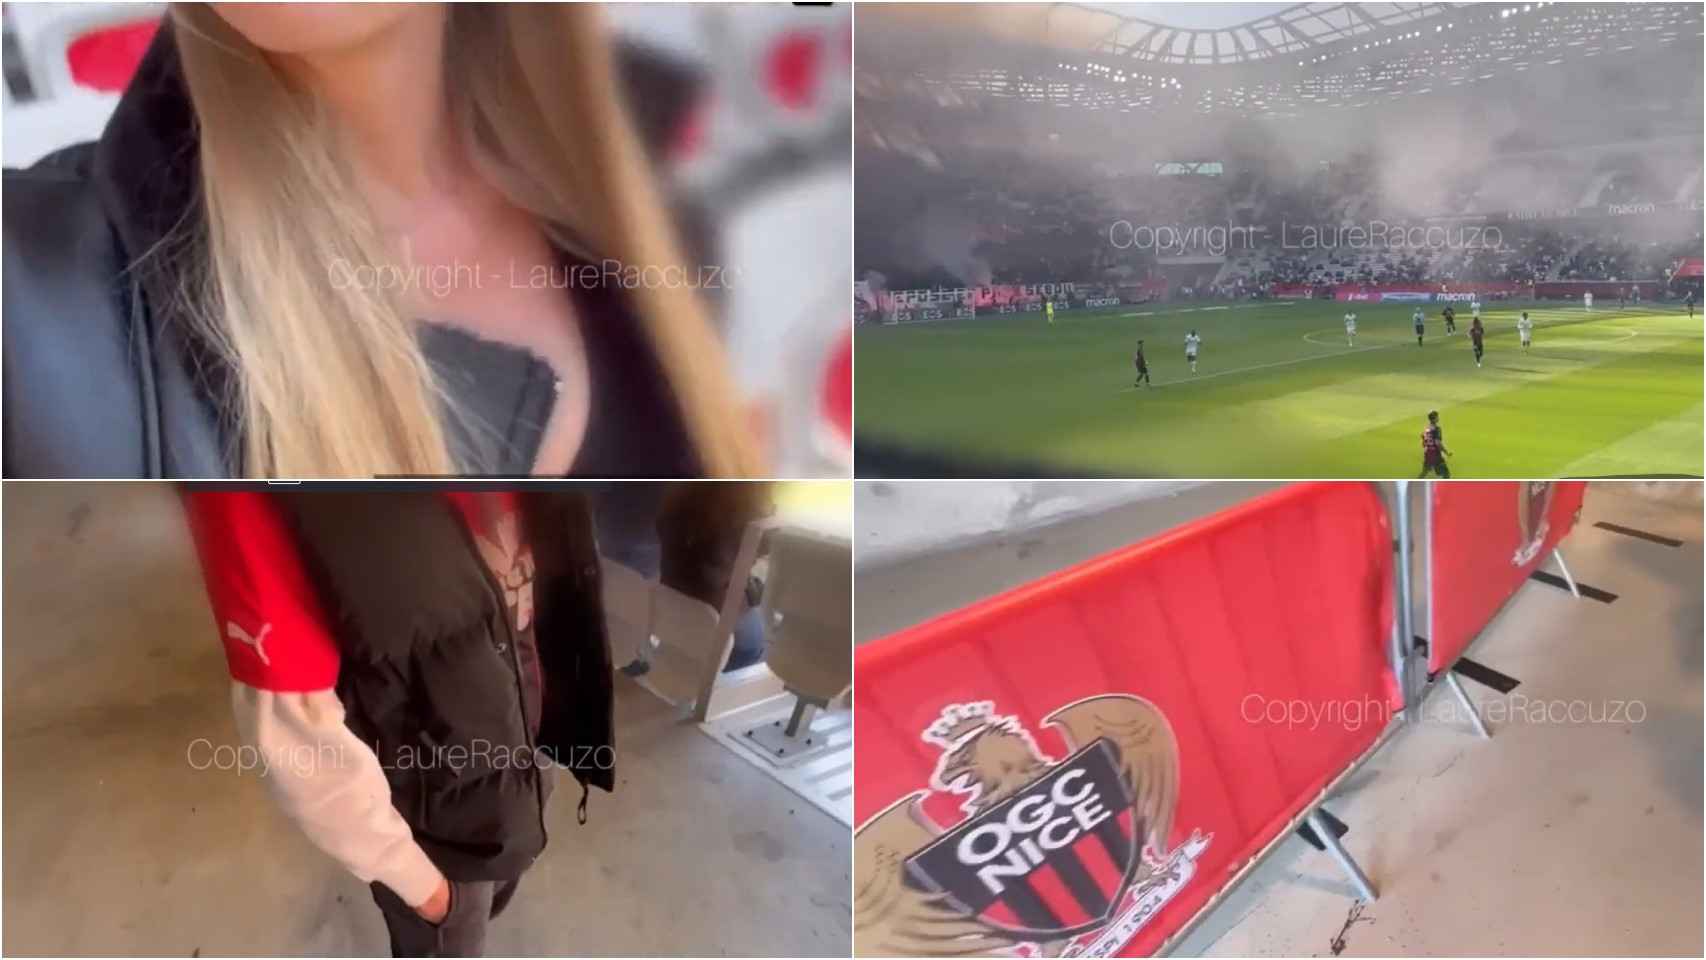 Escándalo en Francia el Niza denuncia la grabación de un vídeo porno en su estadio en pleno partido